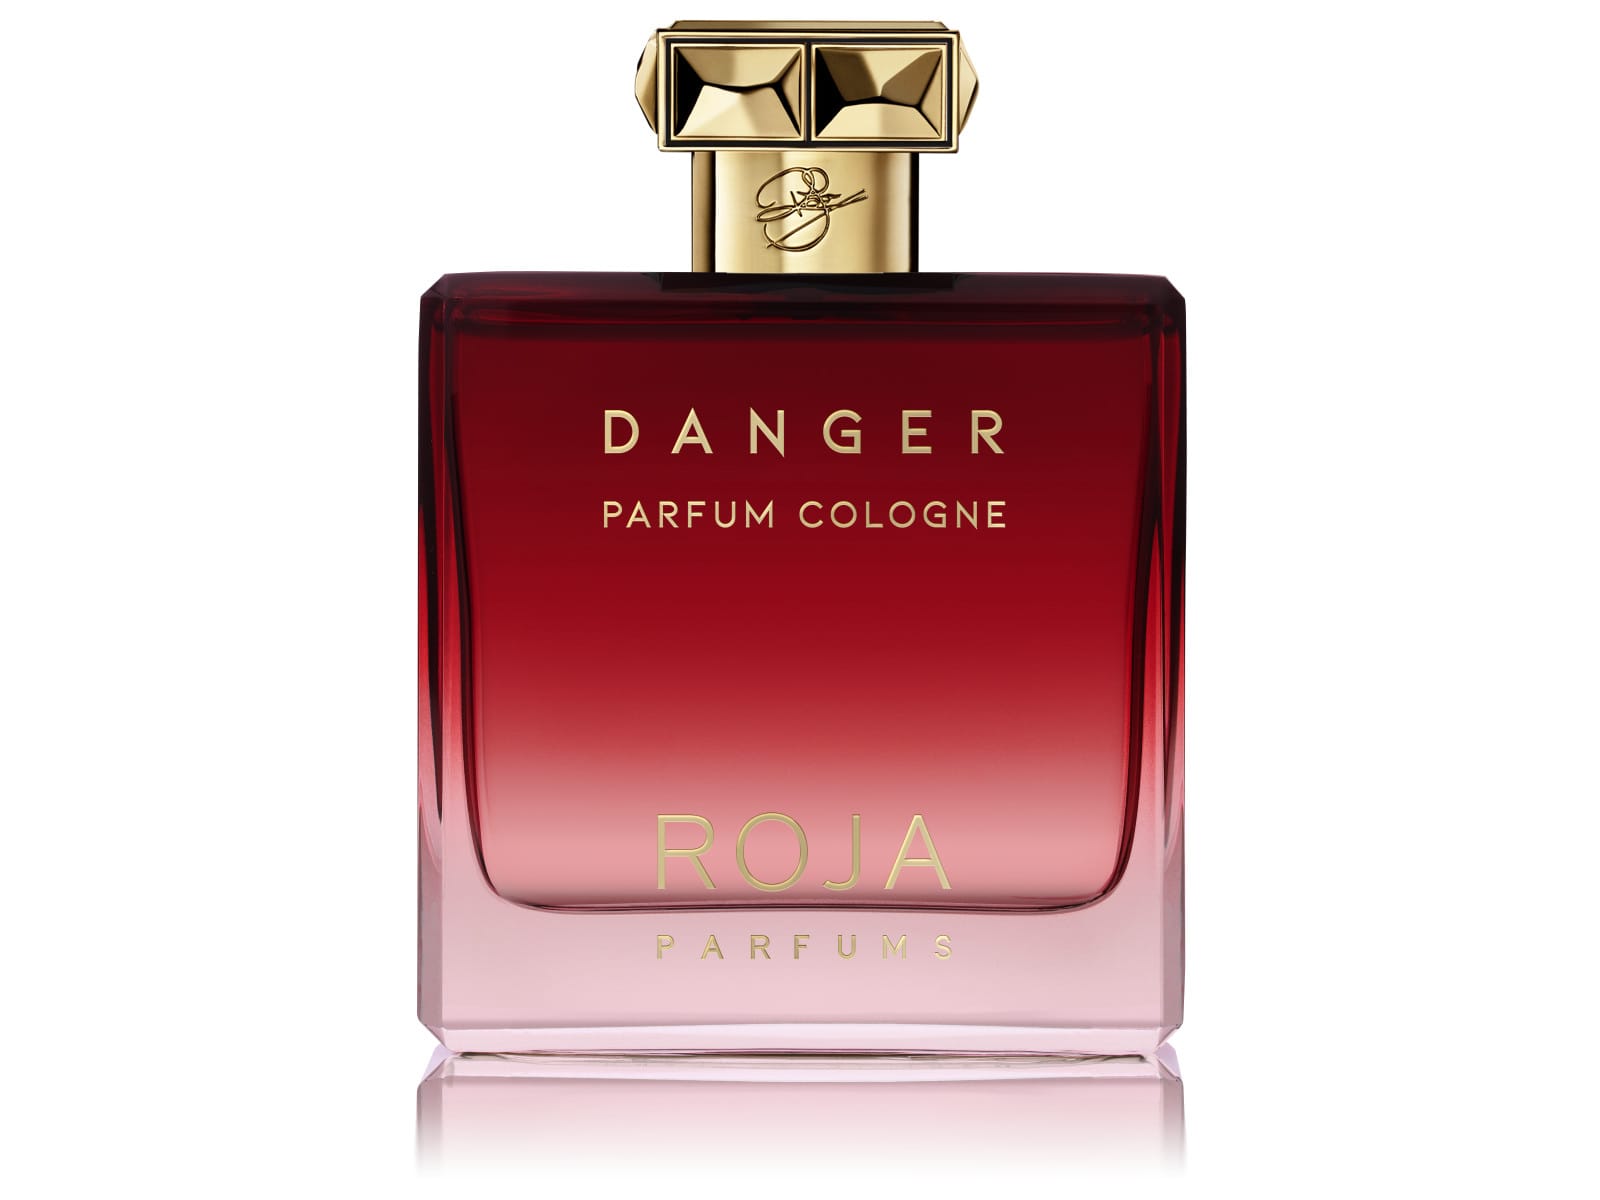 Roja - Danger Pour Homme Parfum Cologne.